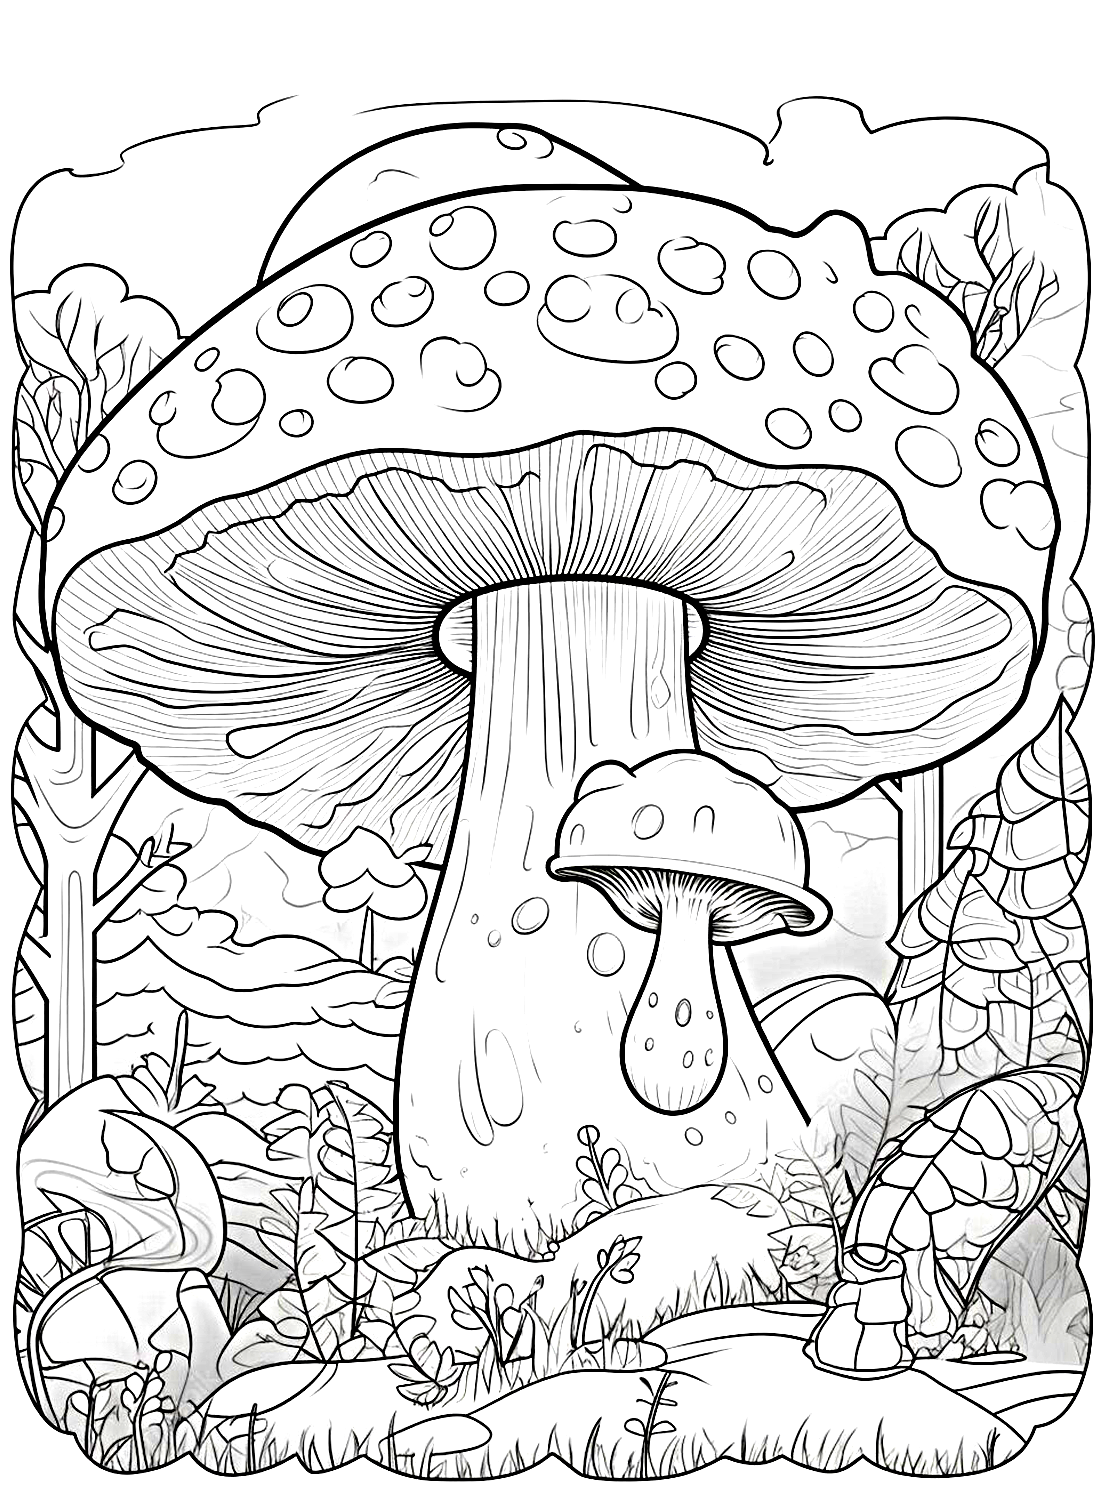 Una imagen de hongo gigante de Mushroom